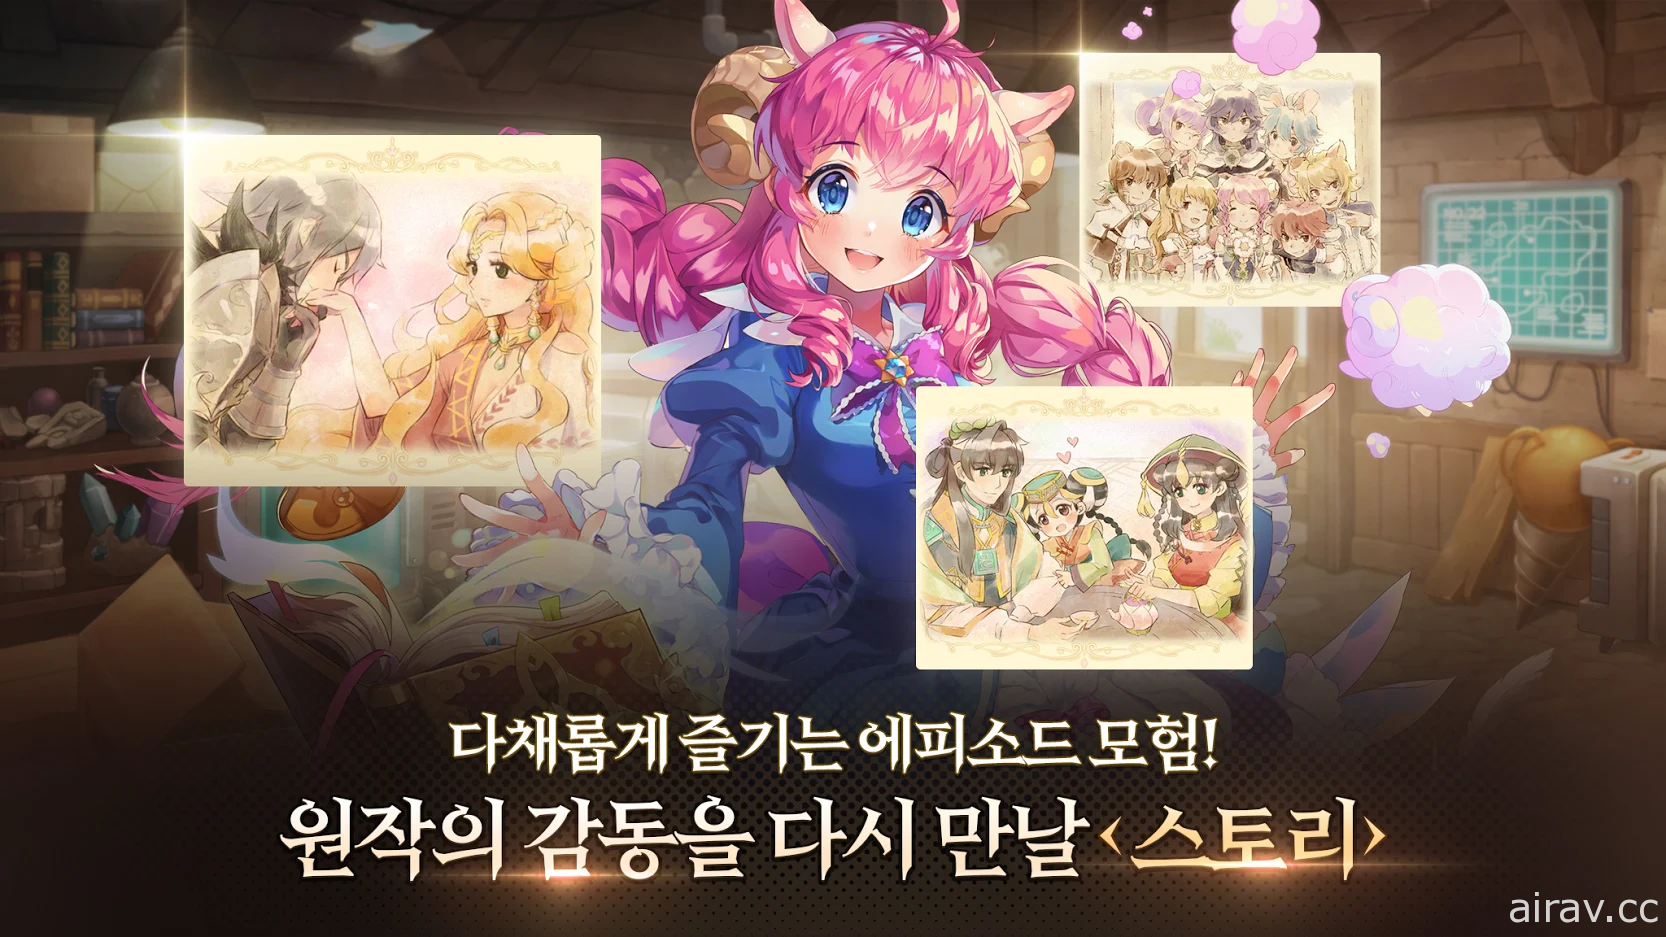 同名線上遊戲改編《卡巴拉島 M》今於韓國推出 於手機上再次體驗經典鑽地樂趣